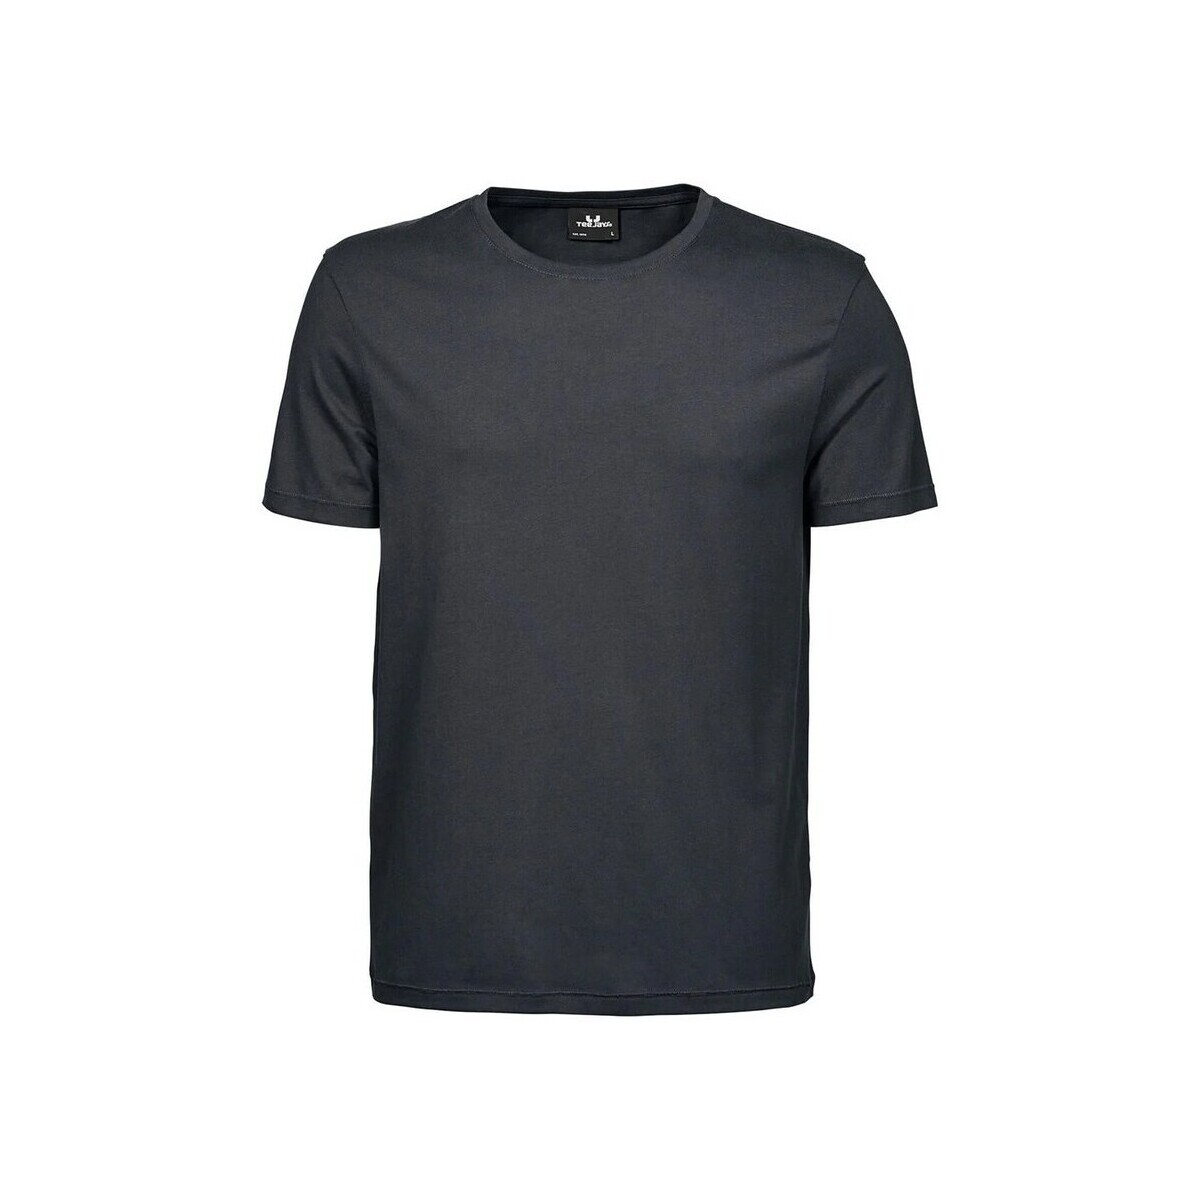 Vêtements Homme T-shirts manches longues Tee Jays TJ5000 Gris